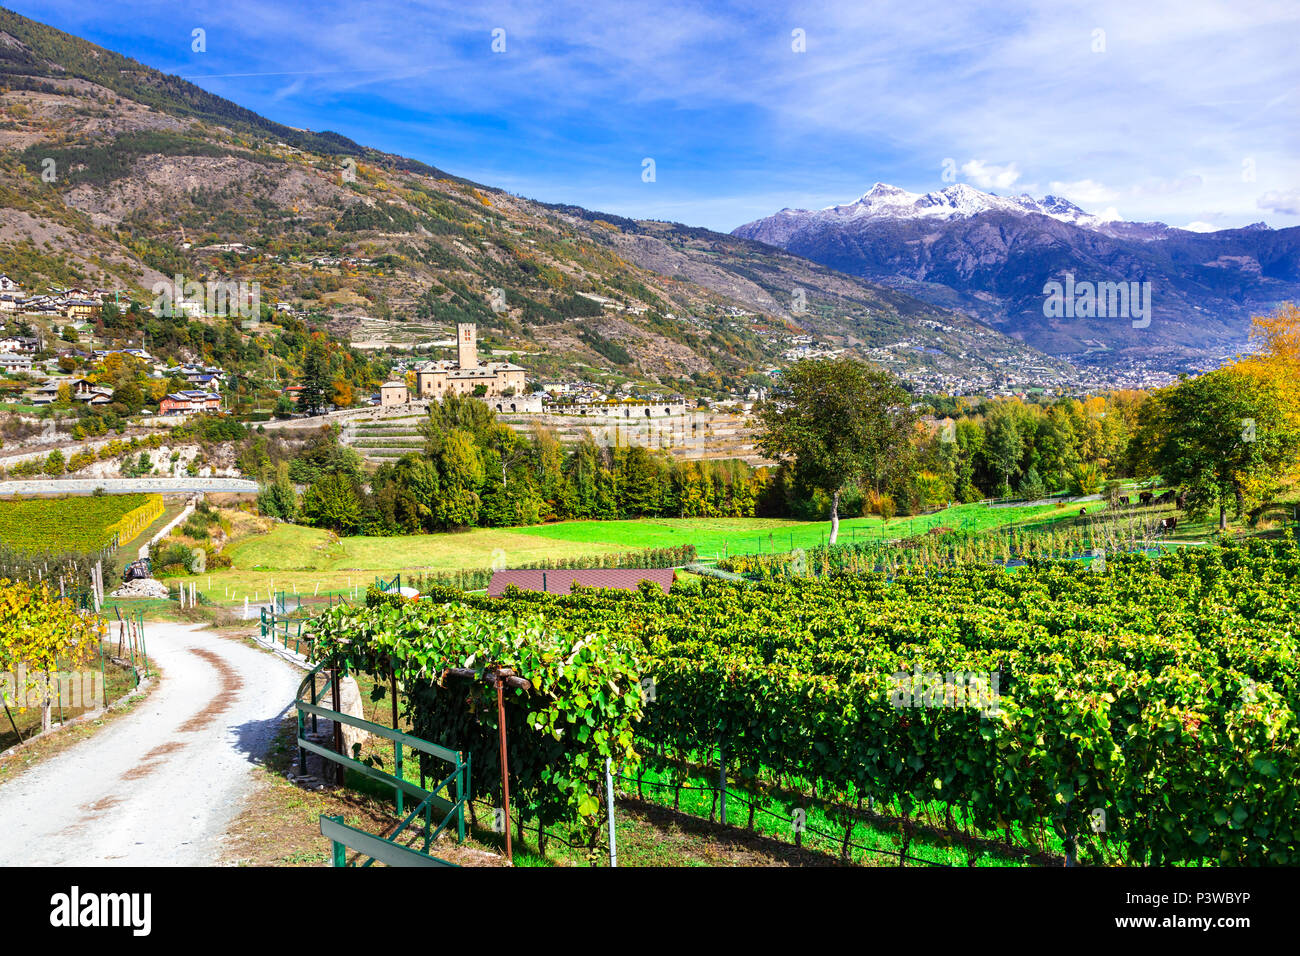 Sarre impressionnant château,avec vue sur les vignobles et les montagnes, la Vallée d'aoste,Italie. Banque D'Images